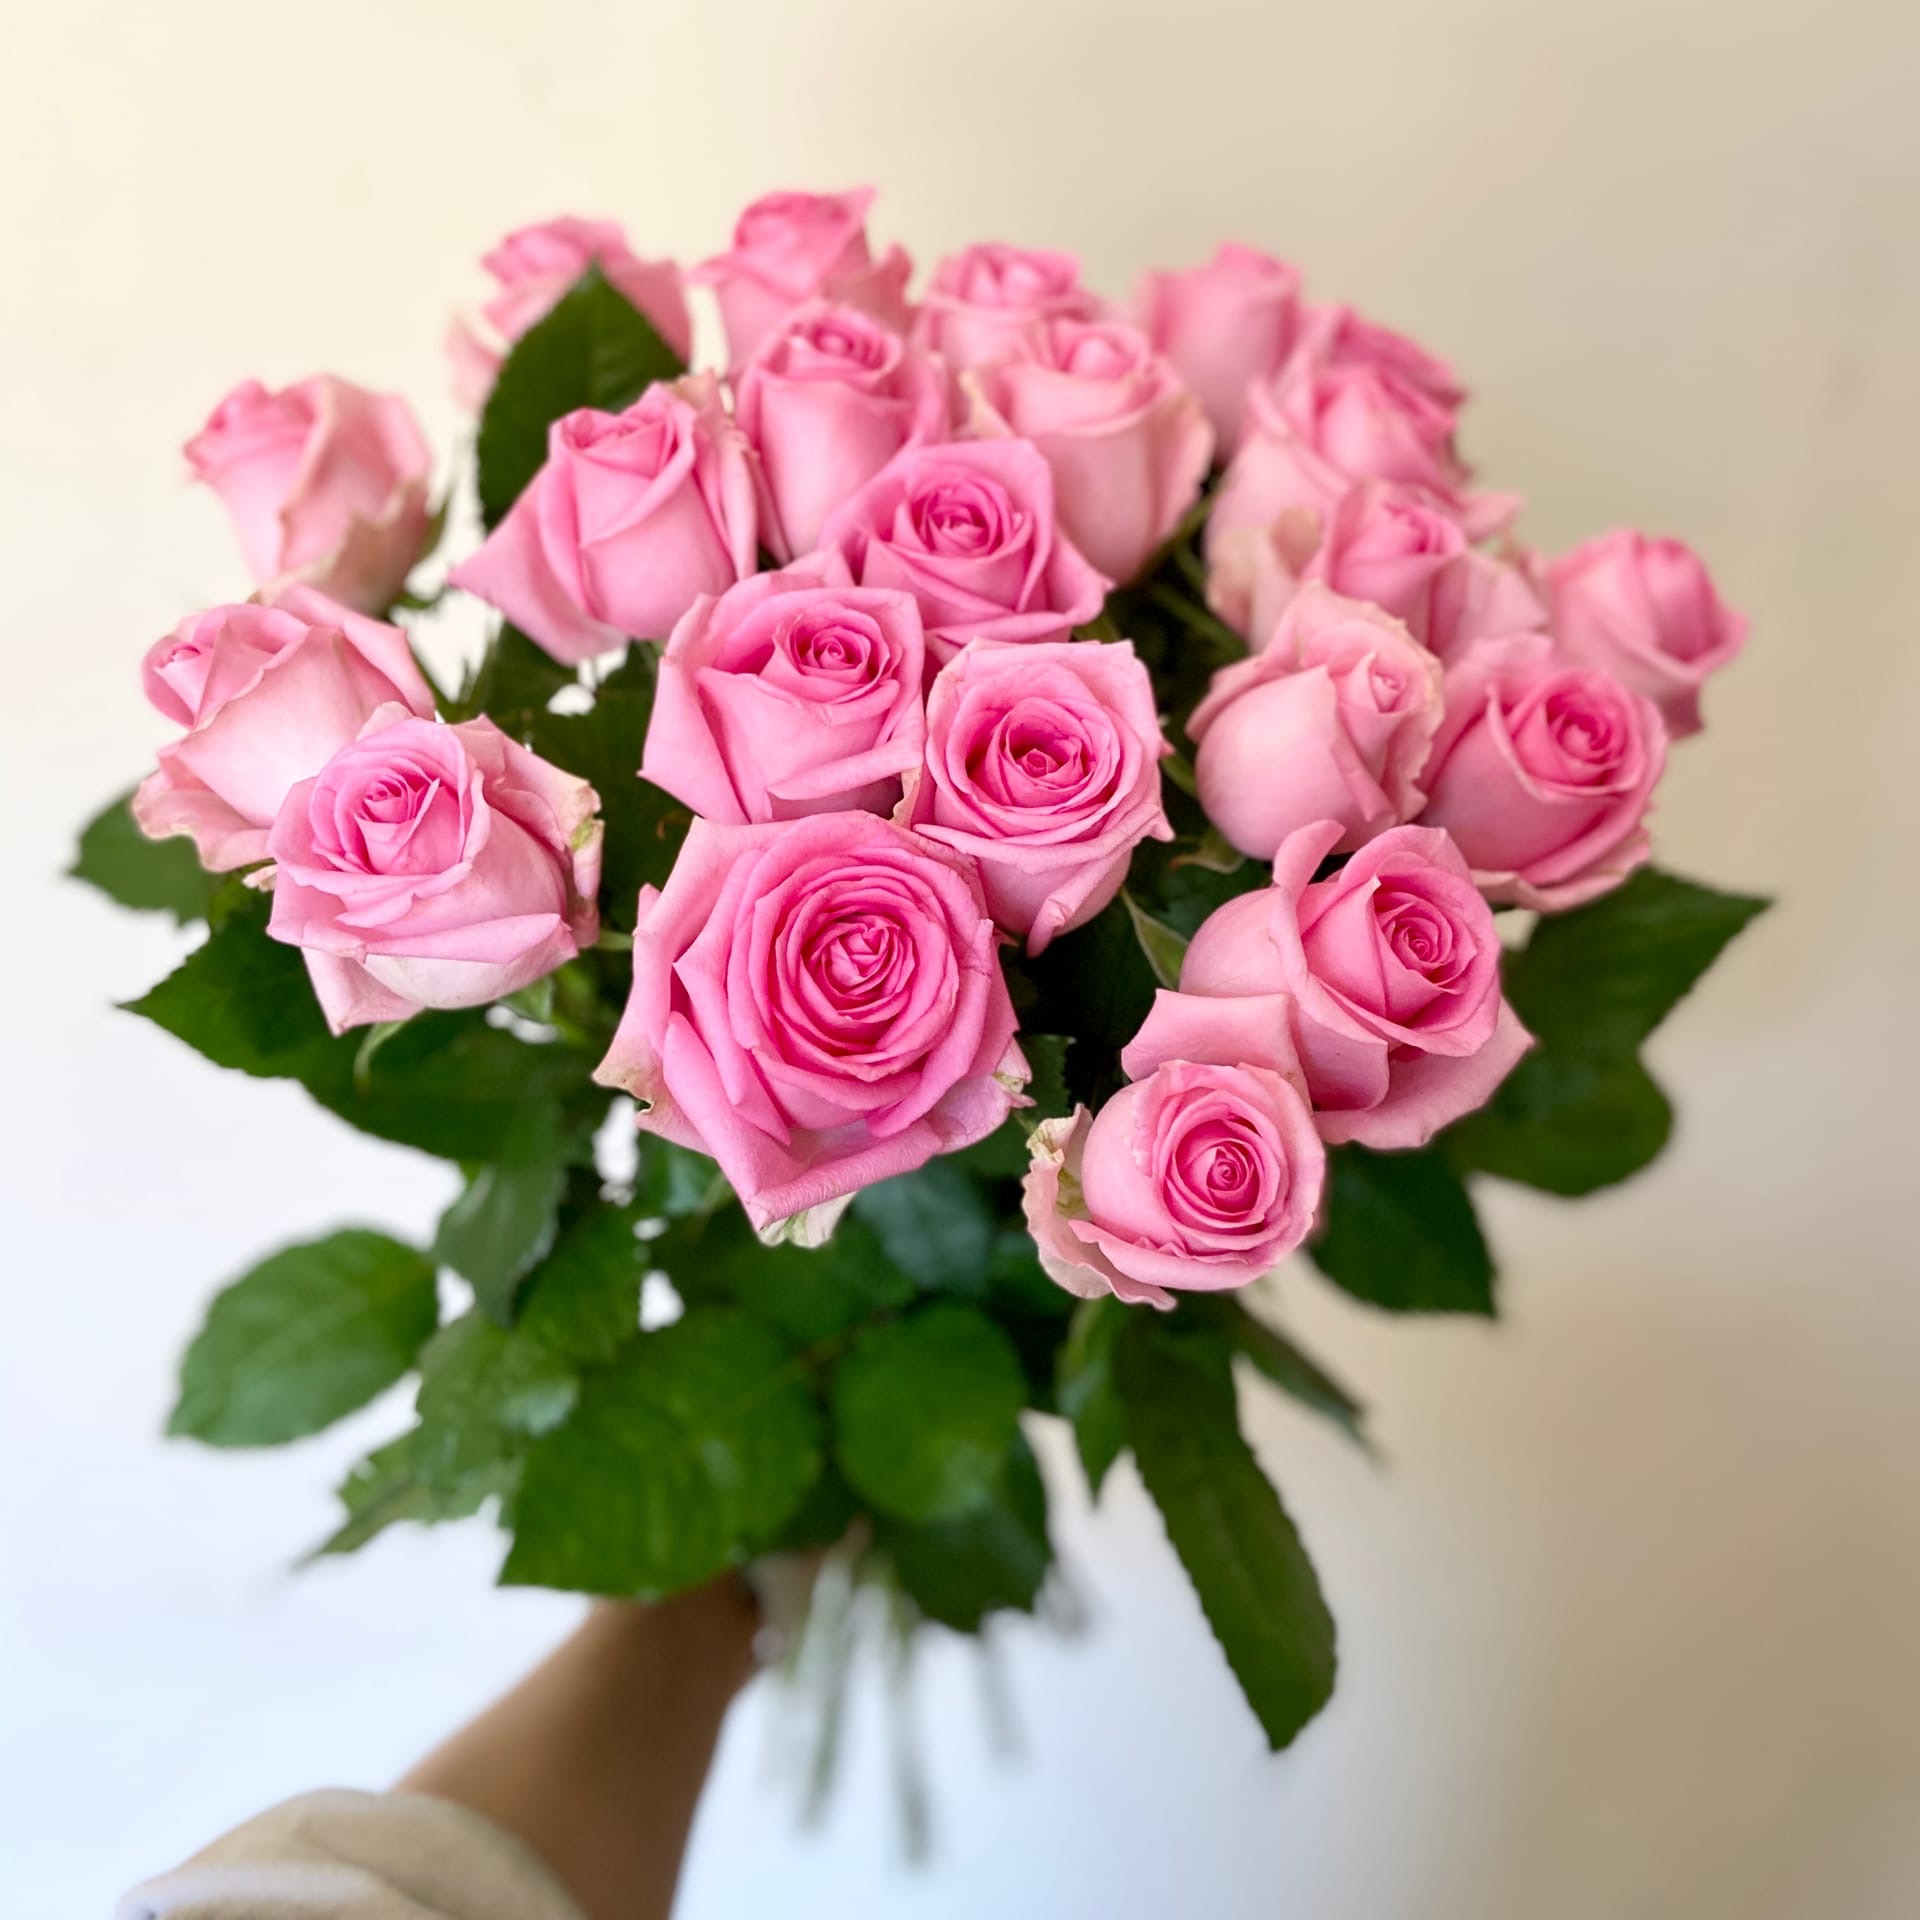 Букет из 21 розы Revival 70см - Доставка цветов Саратов. Сервис Delivery Flowers | 8 800 444-00-29